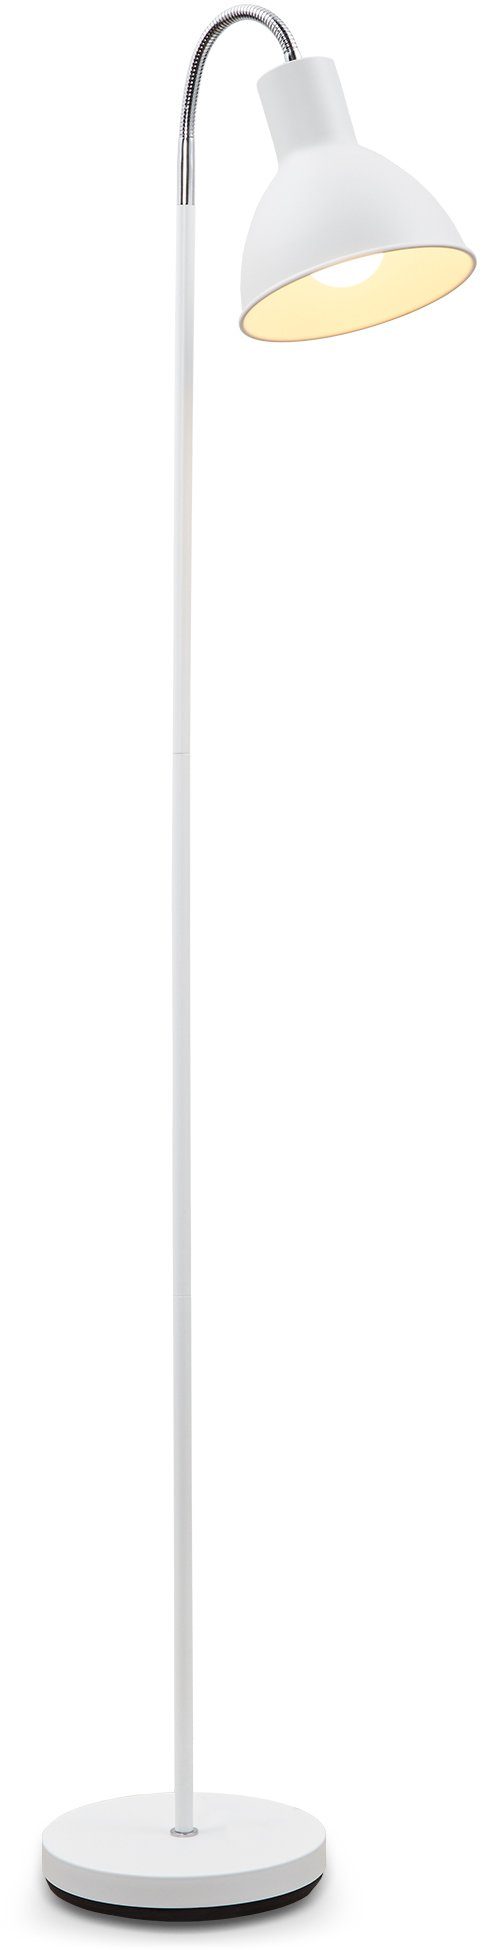 B.K.Licht LED Stehlampe, ohne Metall Industrial Warmweiß, Leuchtmittel, schwenkbar weiß Design Stehleuchte Stand-Leuchte E27